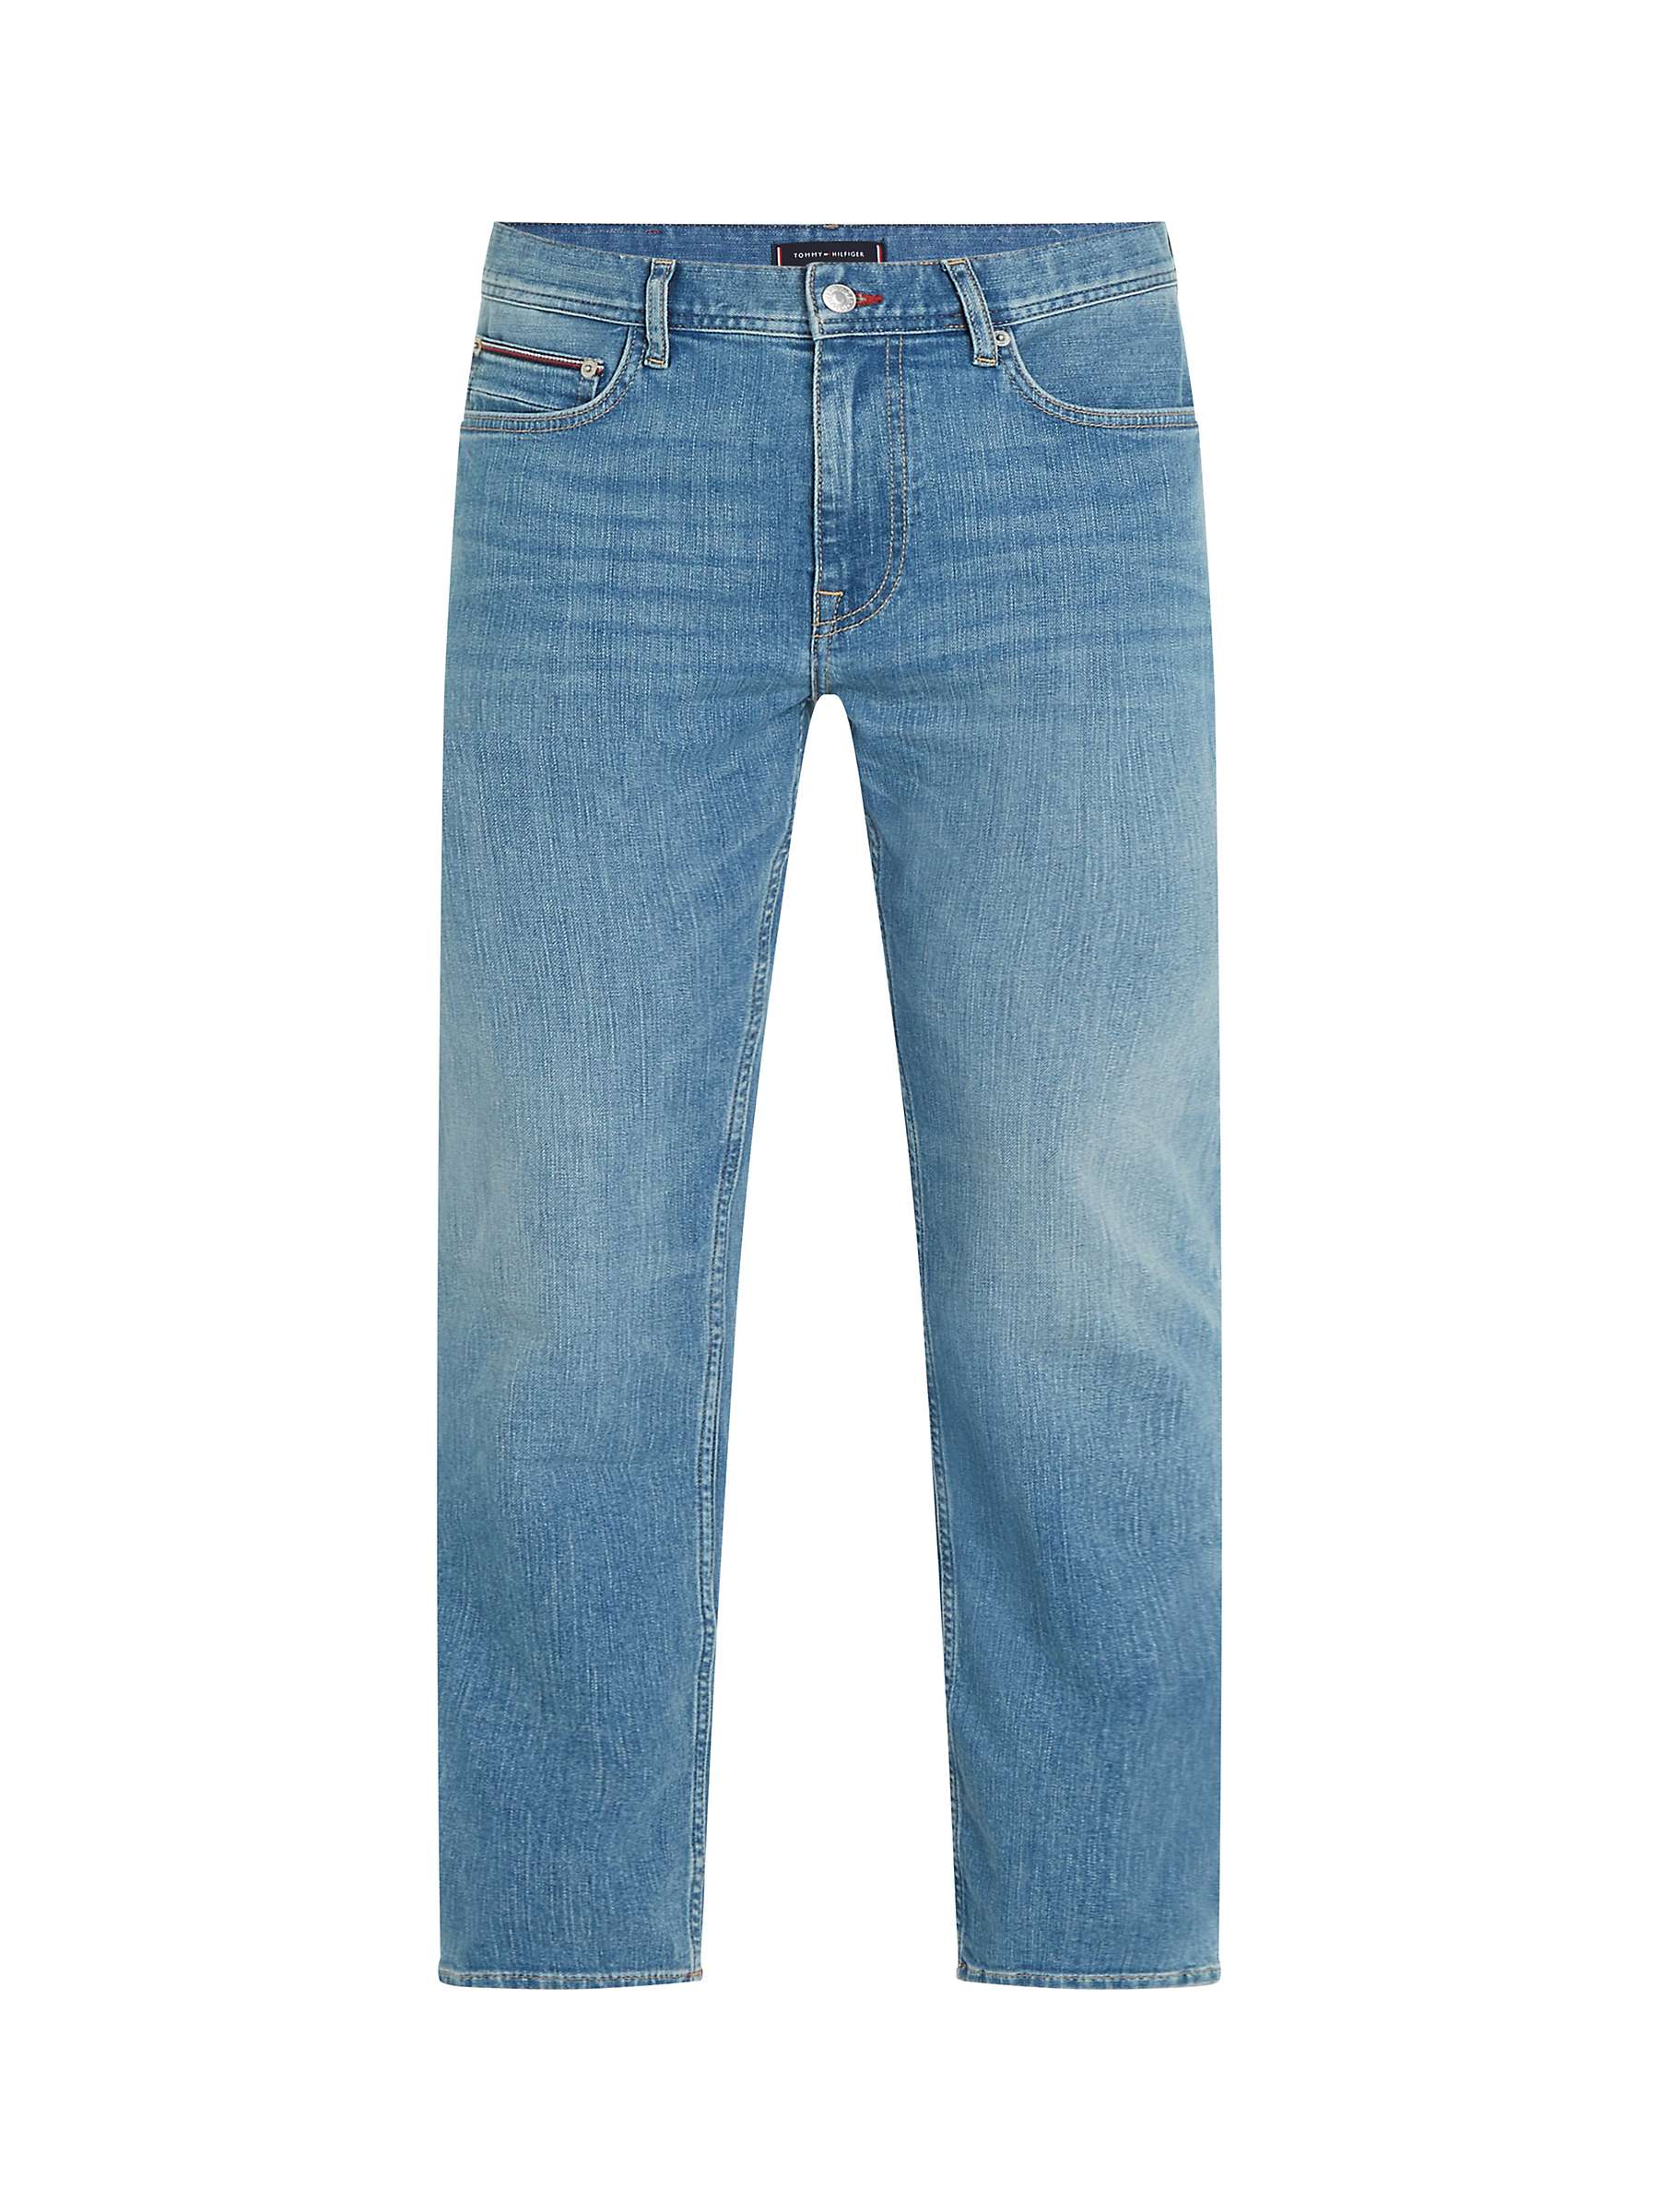 Buy Tommy Hilfiger Madison Jeans, Blue Online at johnlewis.com